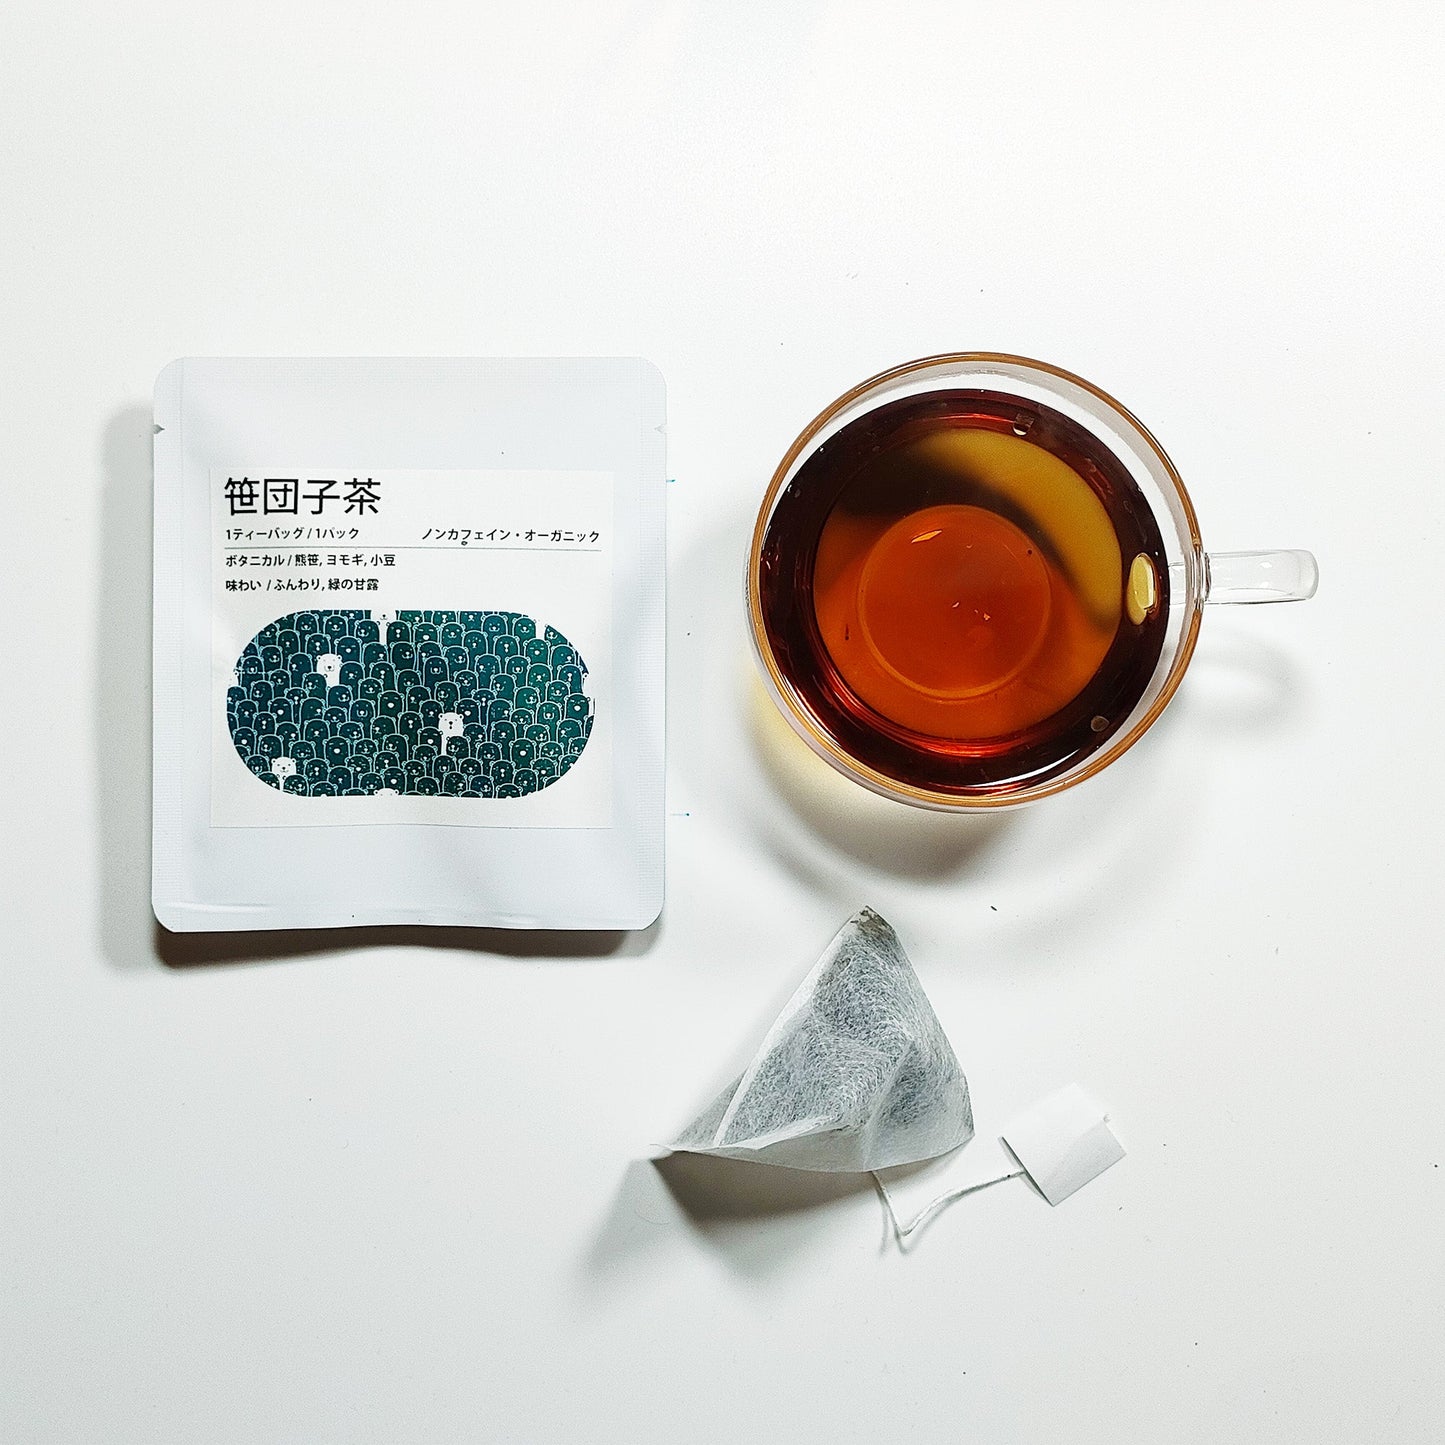 笹団子茶ギフト×1箱(5パック×2包入り)